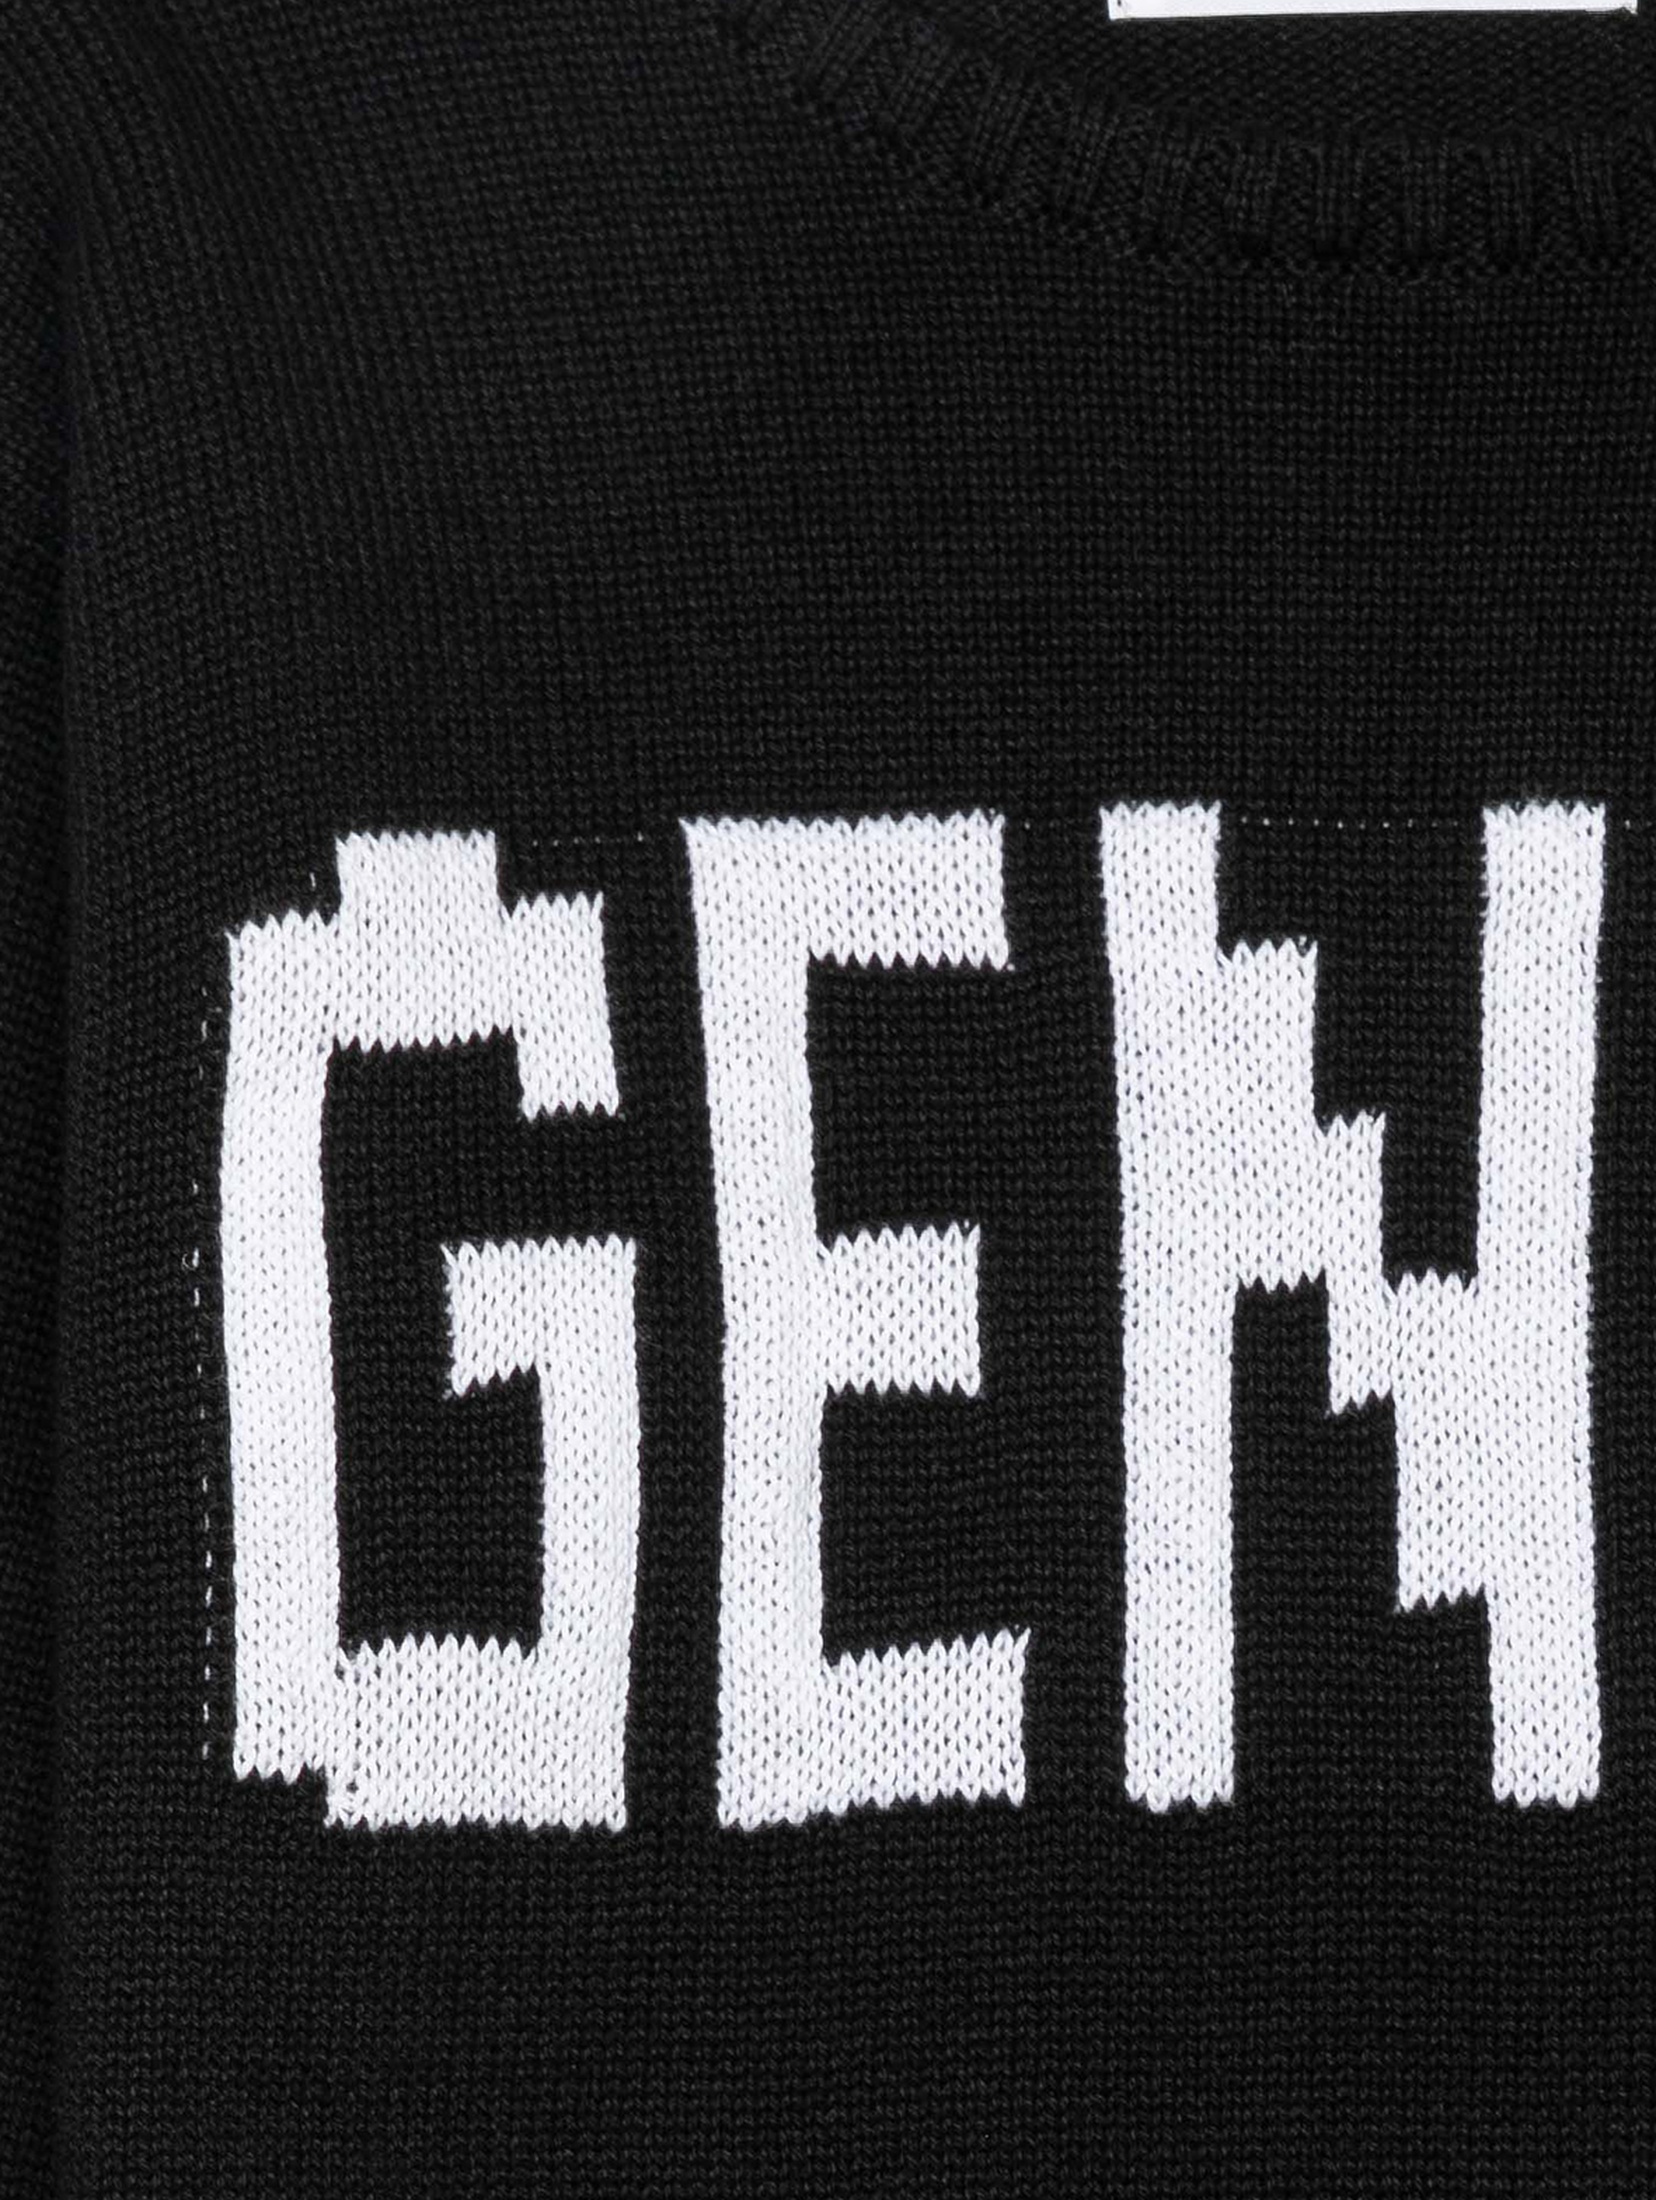 Chłopięcy bawełniany sweter oversize z napisem Genius